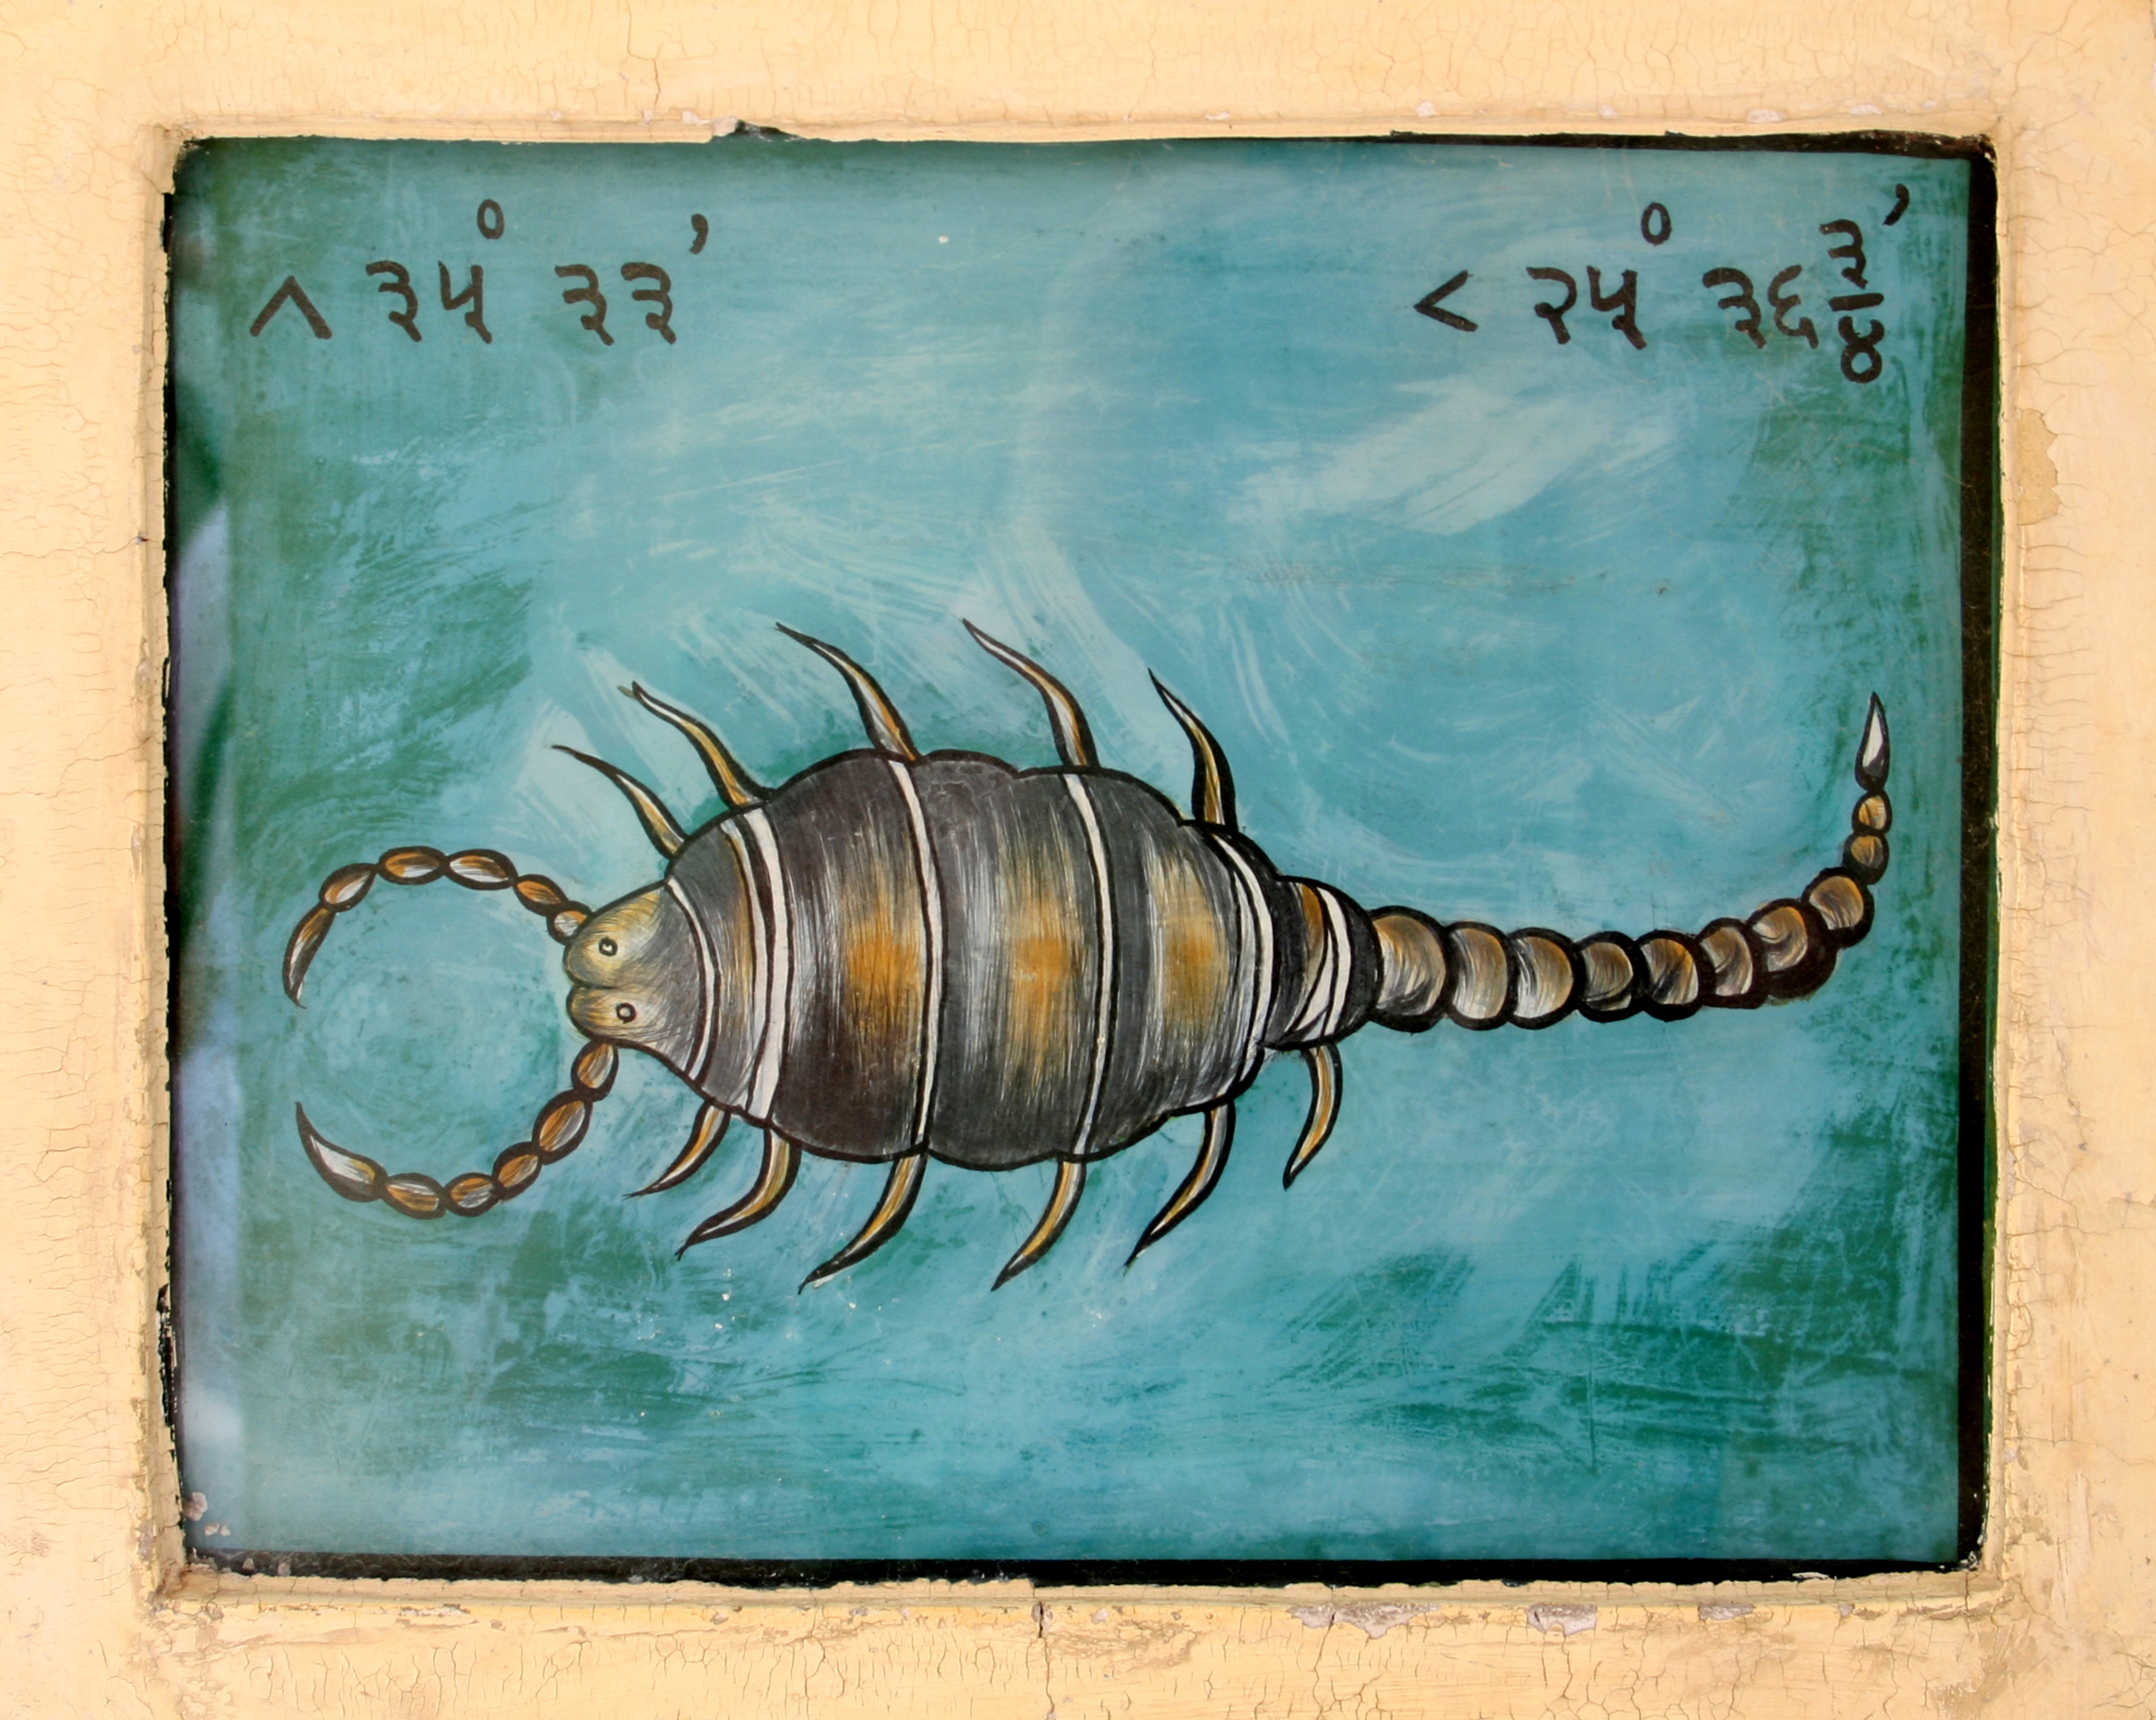 Scorpion zodiac sign, Jantar Mantar, Jaipur, India